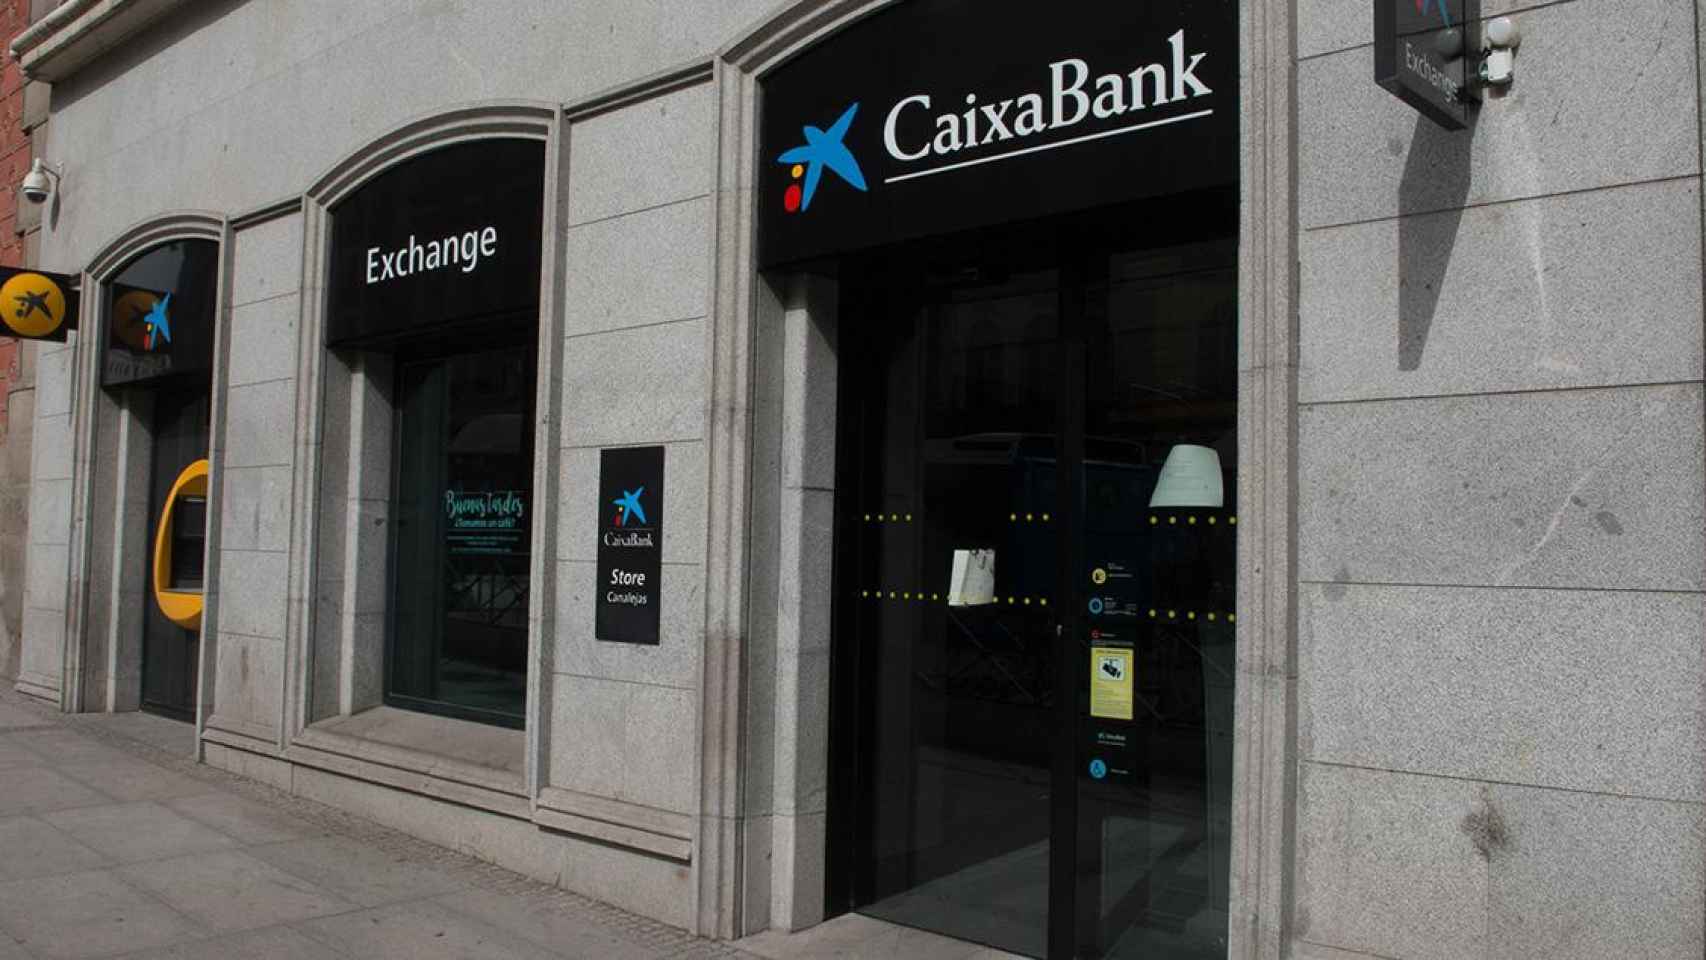 Oficina de Caixabank, uno de los bancos españoles más poderosos / EP